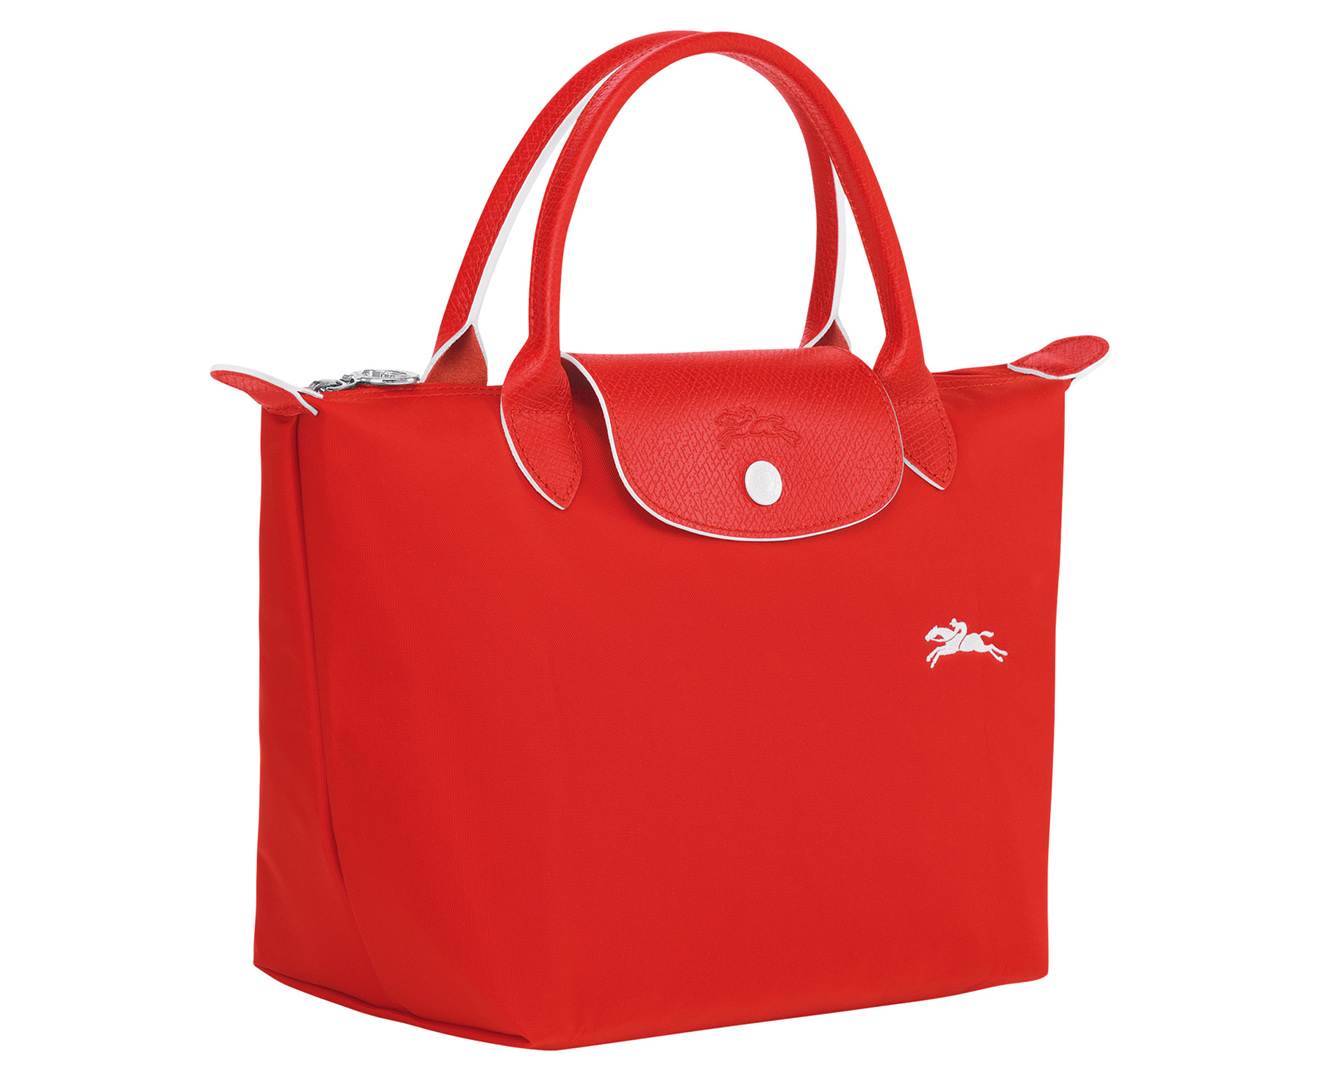 Longchamp Le Pliage Top Handle Bag - Vermilion | Catch.co.nz